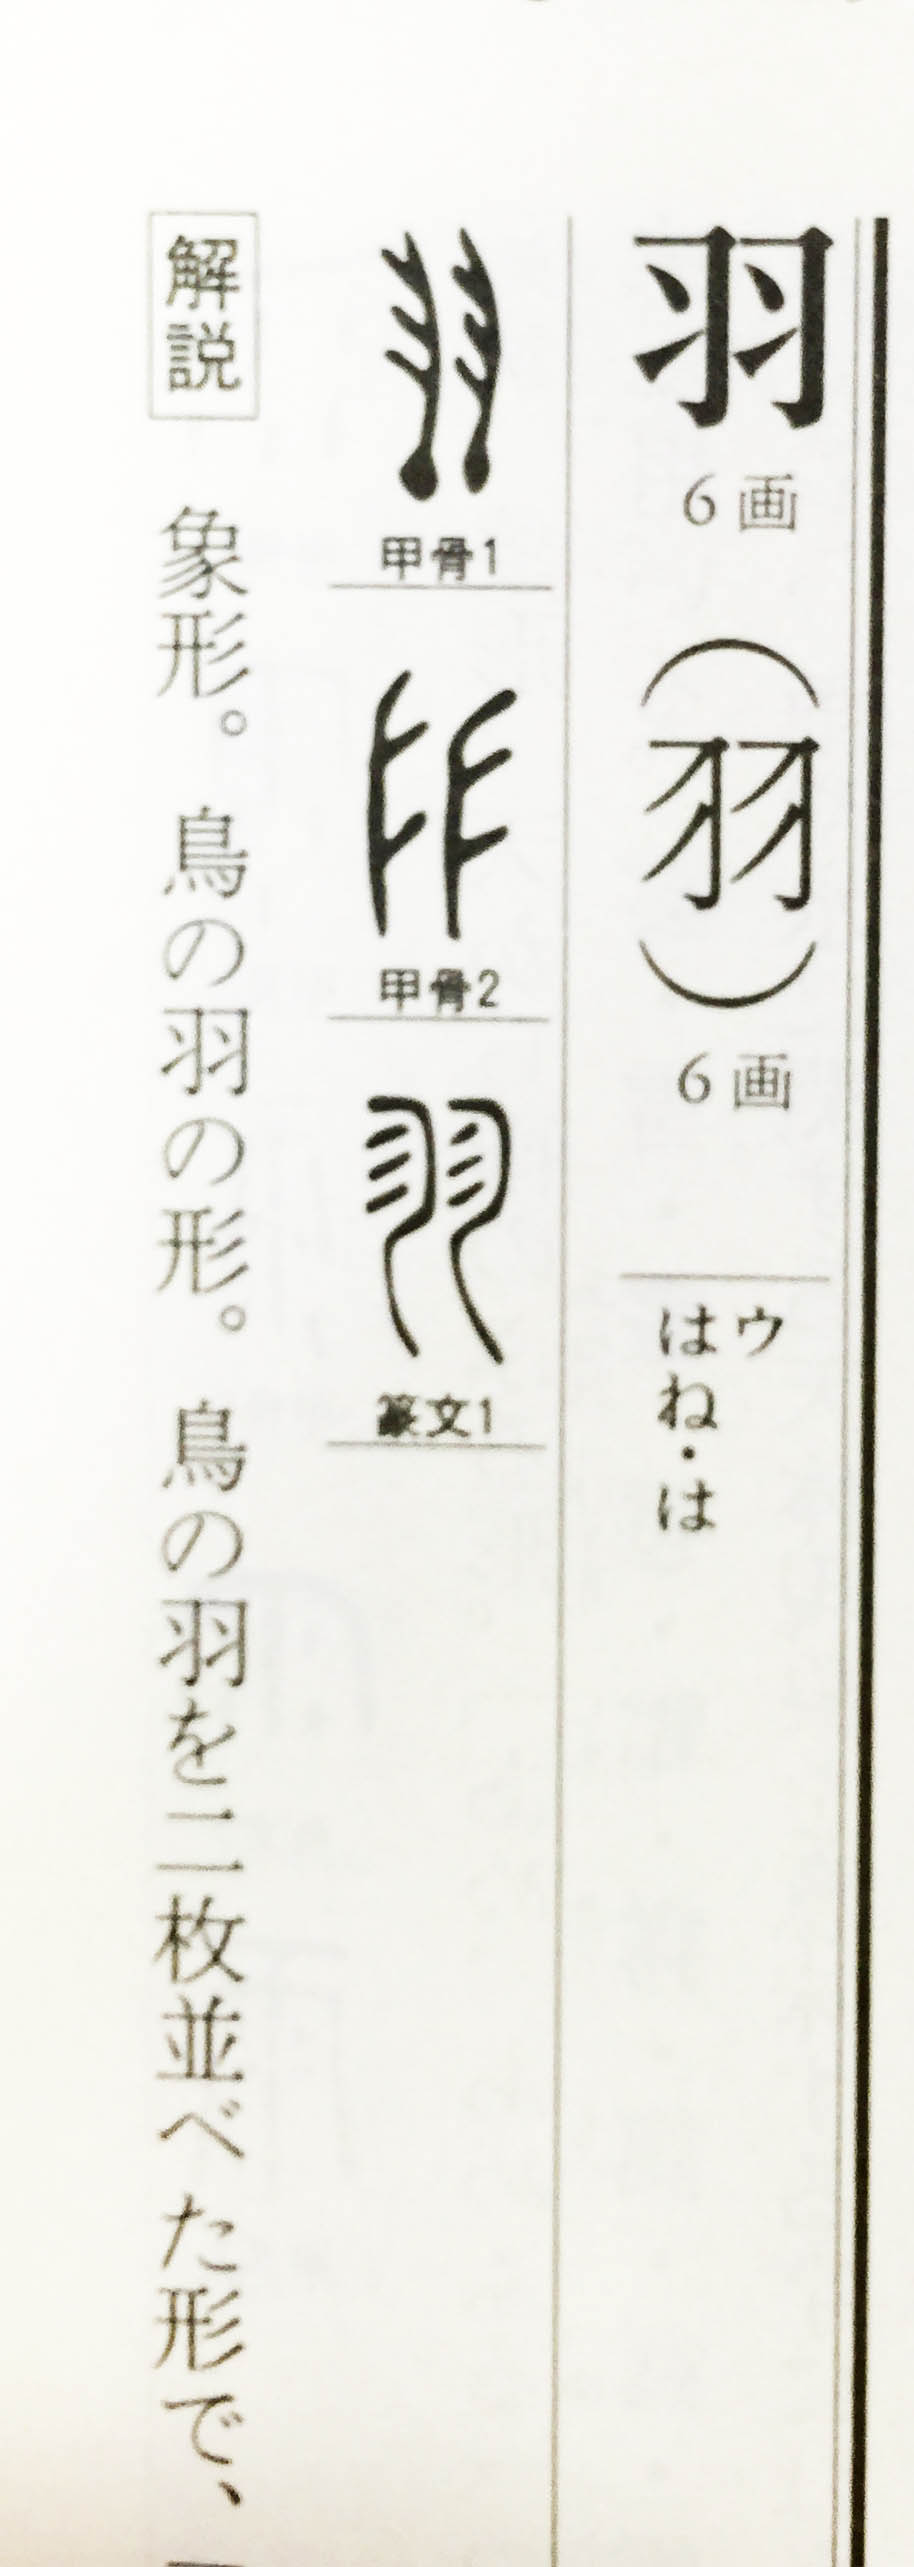 象形文字はおもしろい 2 流れをくむ篆書体は今でも印鑑によく使われます 羽という字 いんかん生活のblog